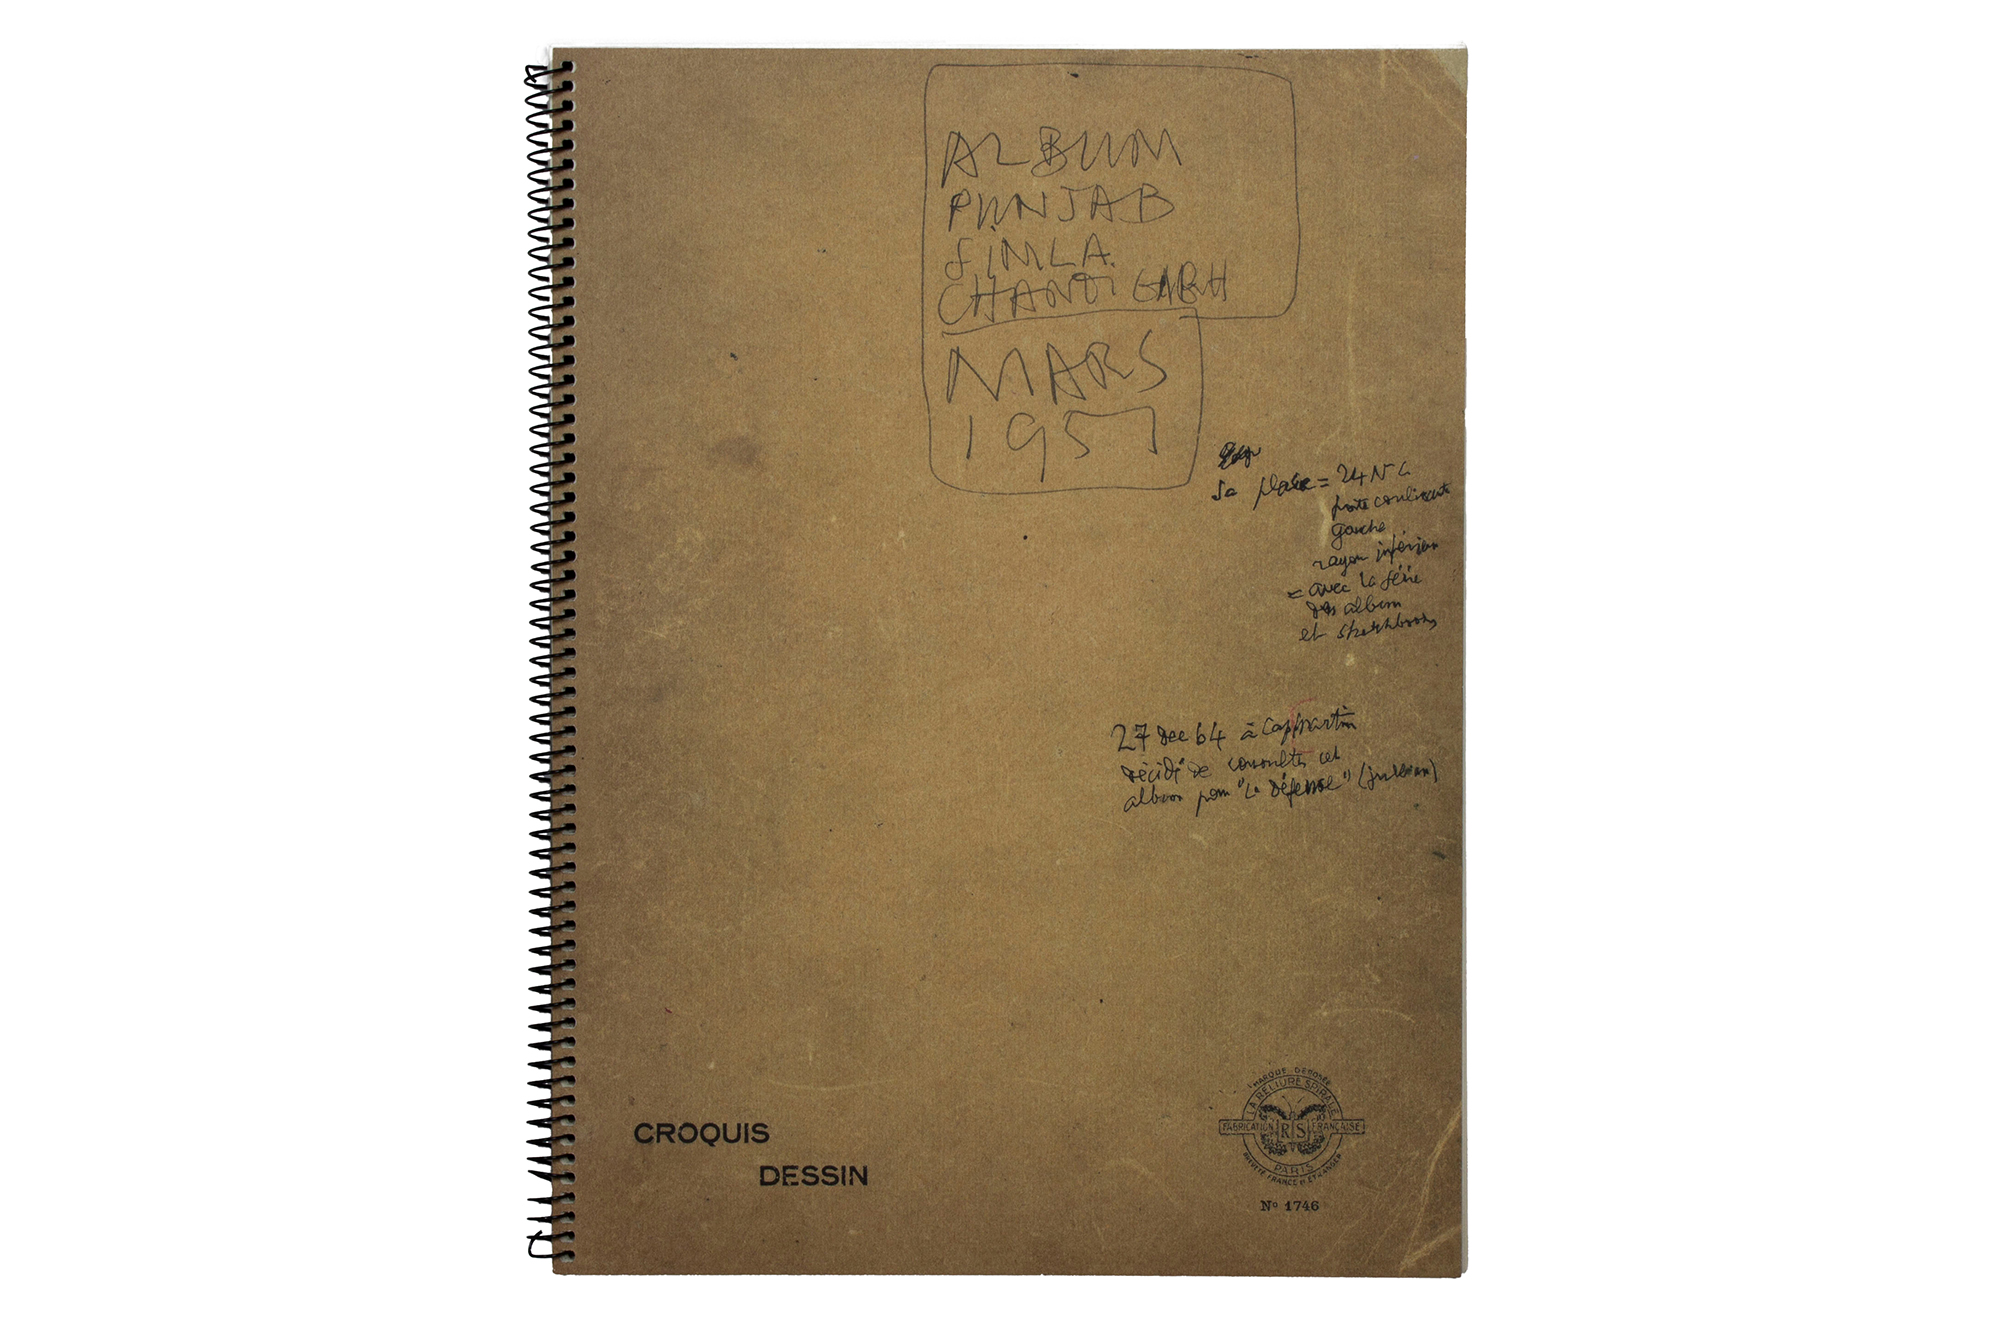 勒·柯布西耶螺旋装订笔记本的影印版，又被称为《旁遮普相册》。